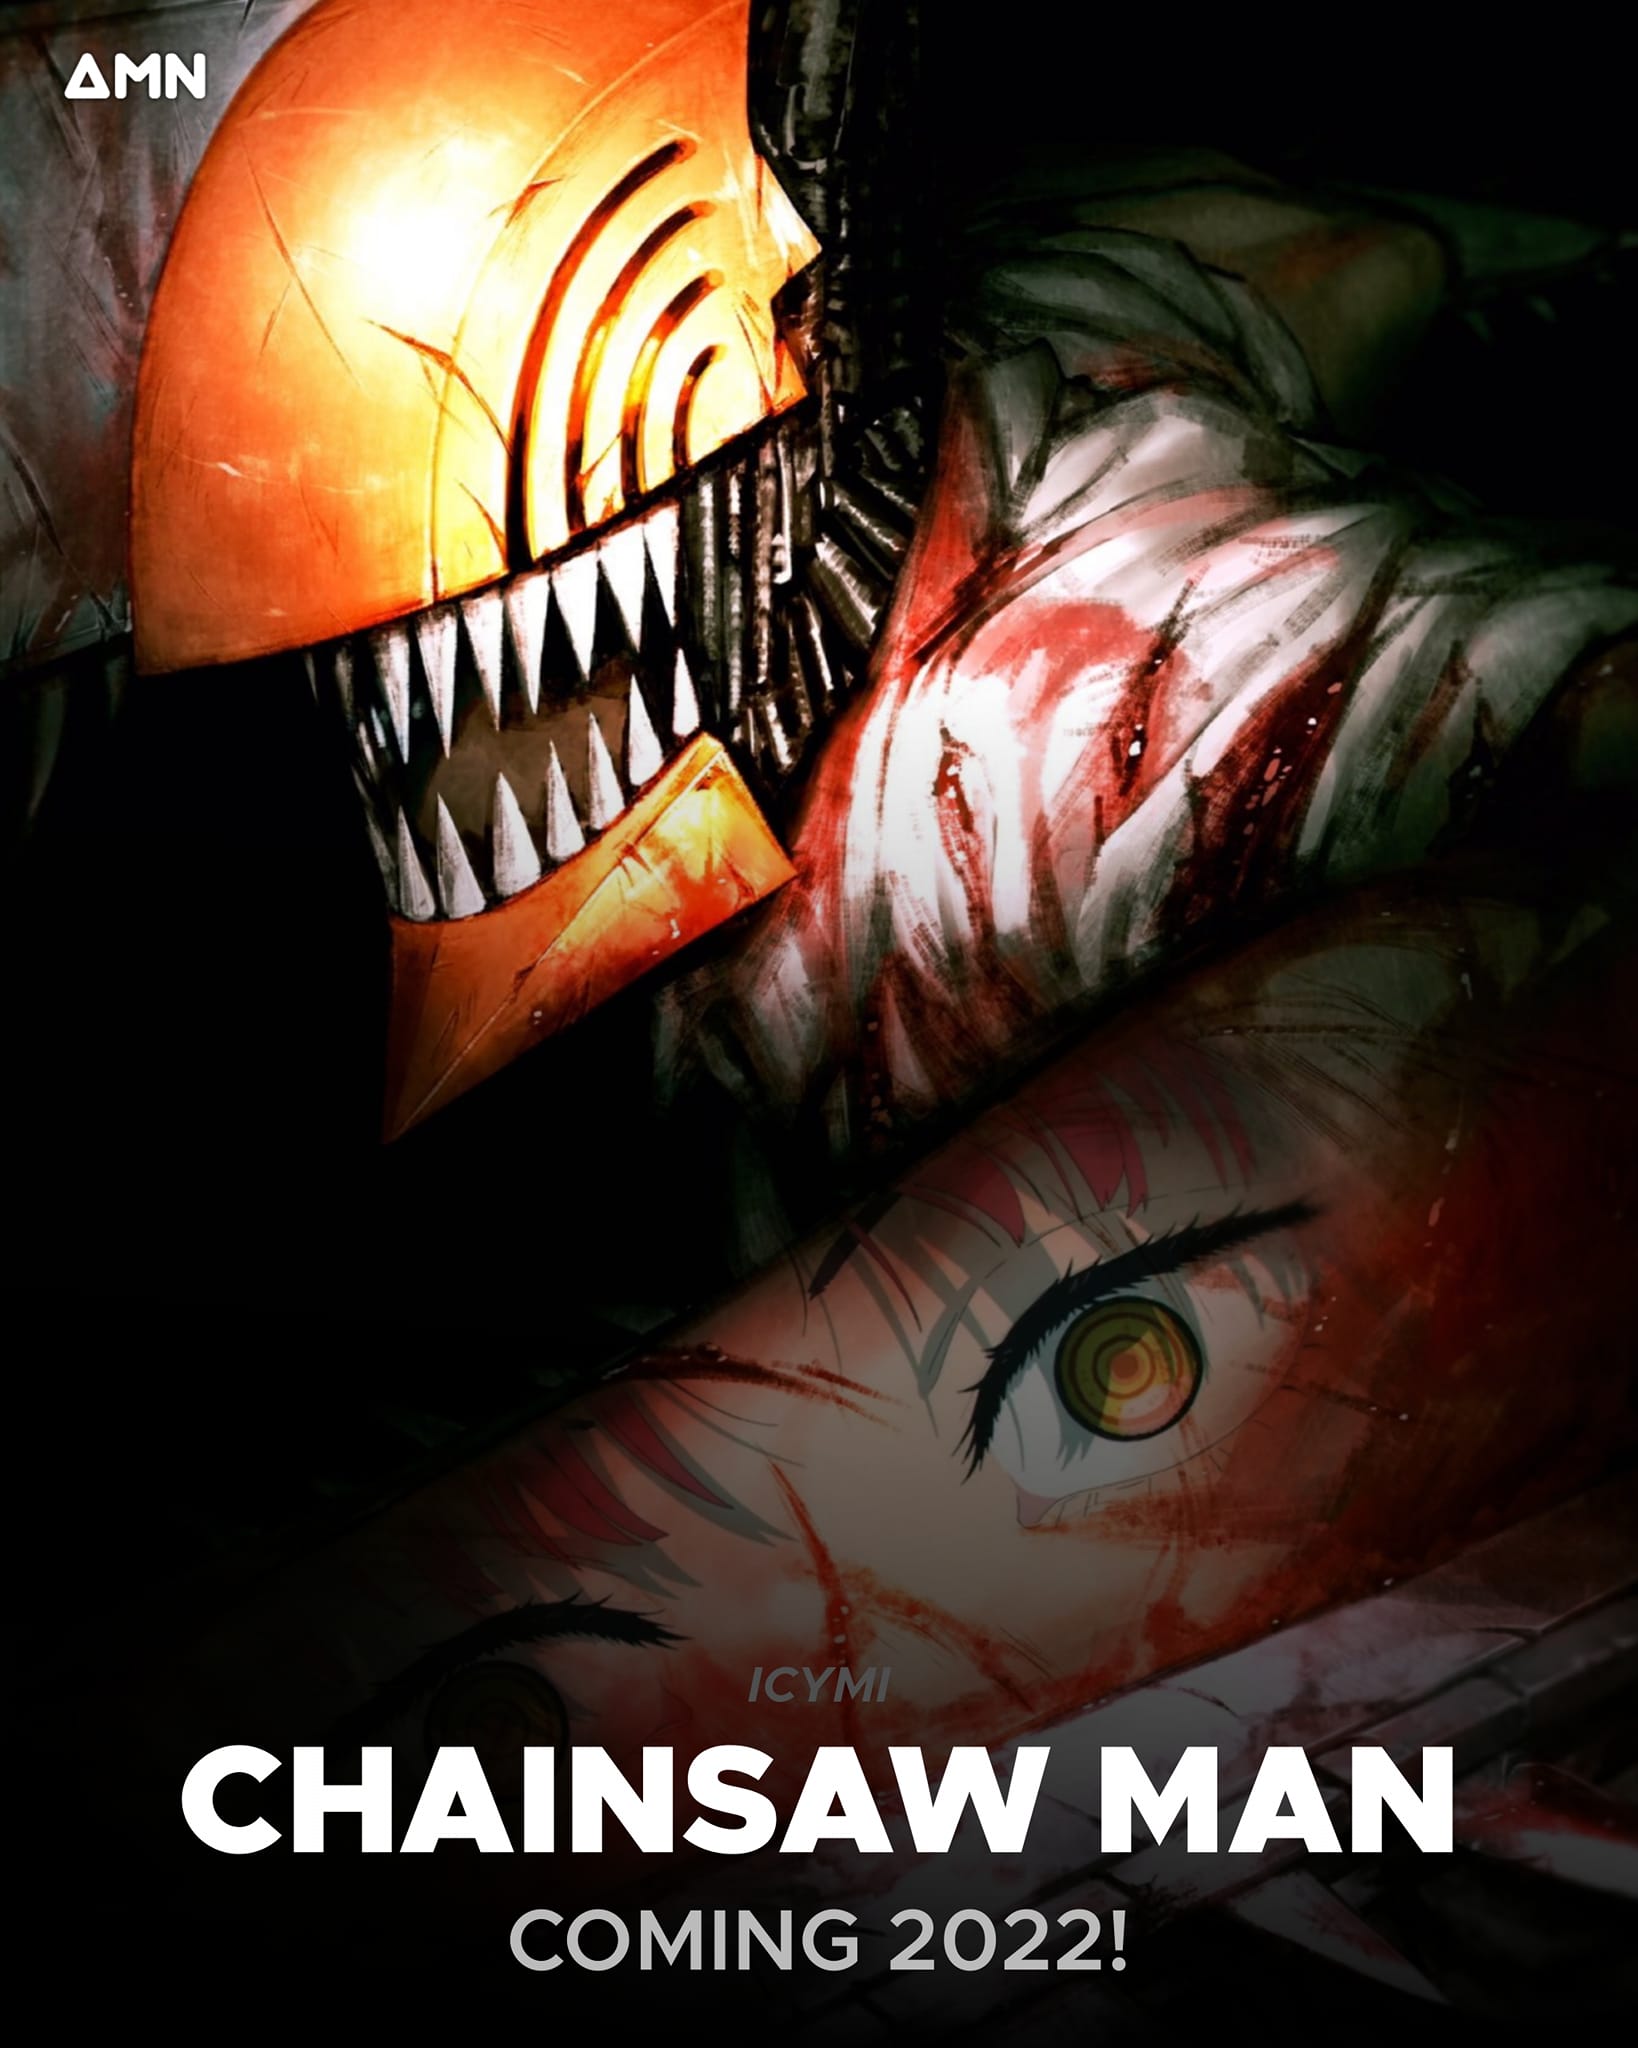 Anime Chainsaw Man đã trở thành một hiện tượng với sự phát triển nhanh chóng trên toàn thế giới. Hình ảnh này sẽ giúp bạn dễ dàng hình dung ra những gì mà anime này mang lại cho người xem.